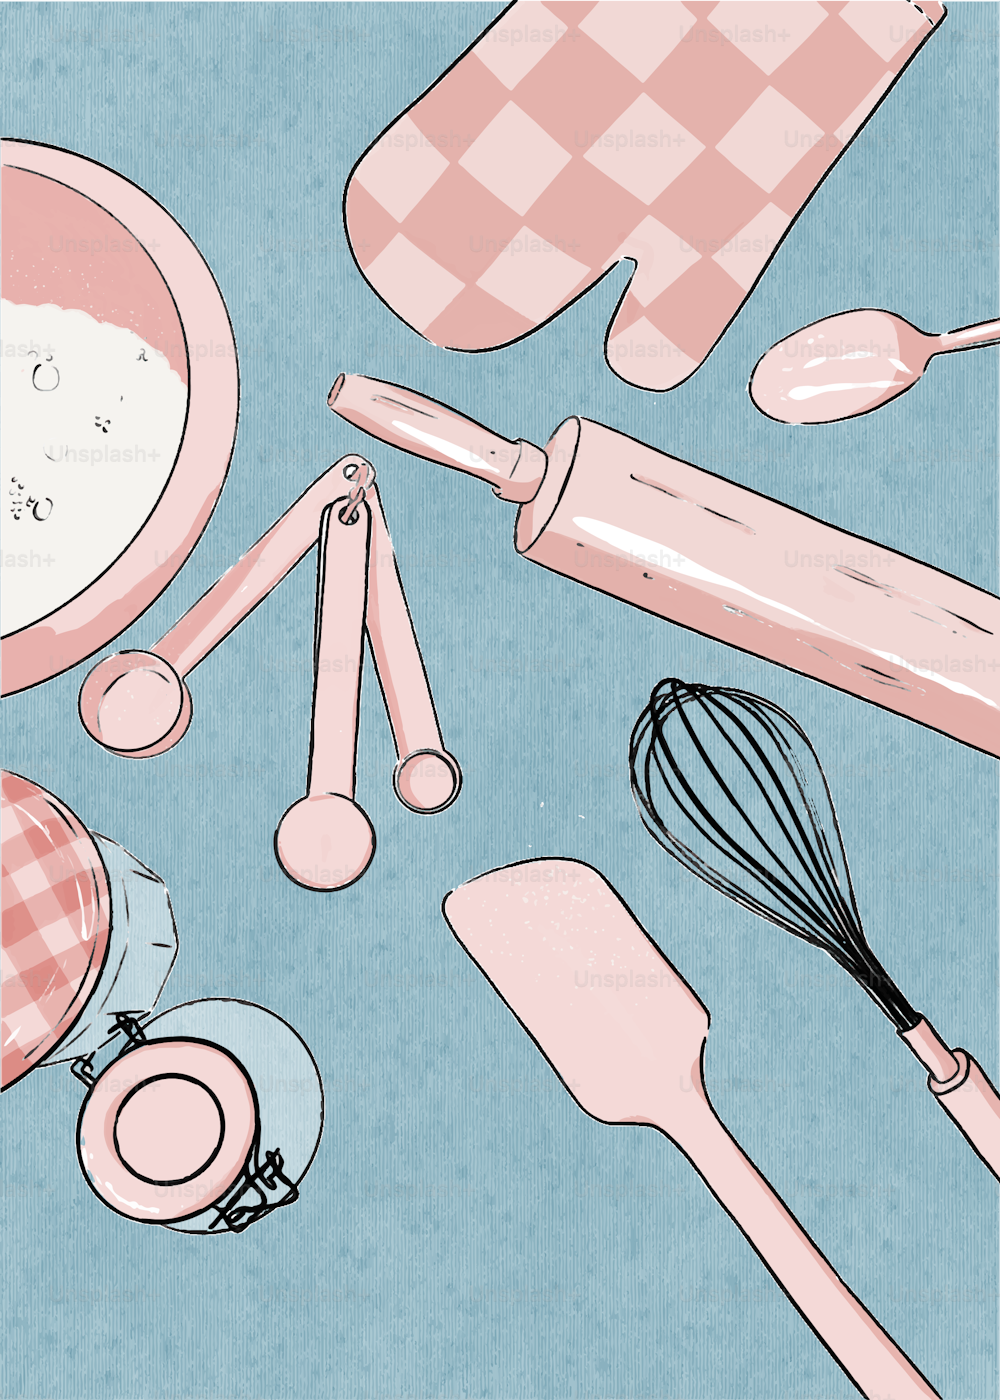 um desenho de utensílios de cozinha e outros itens de cozinha